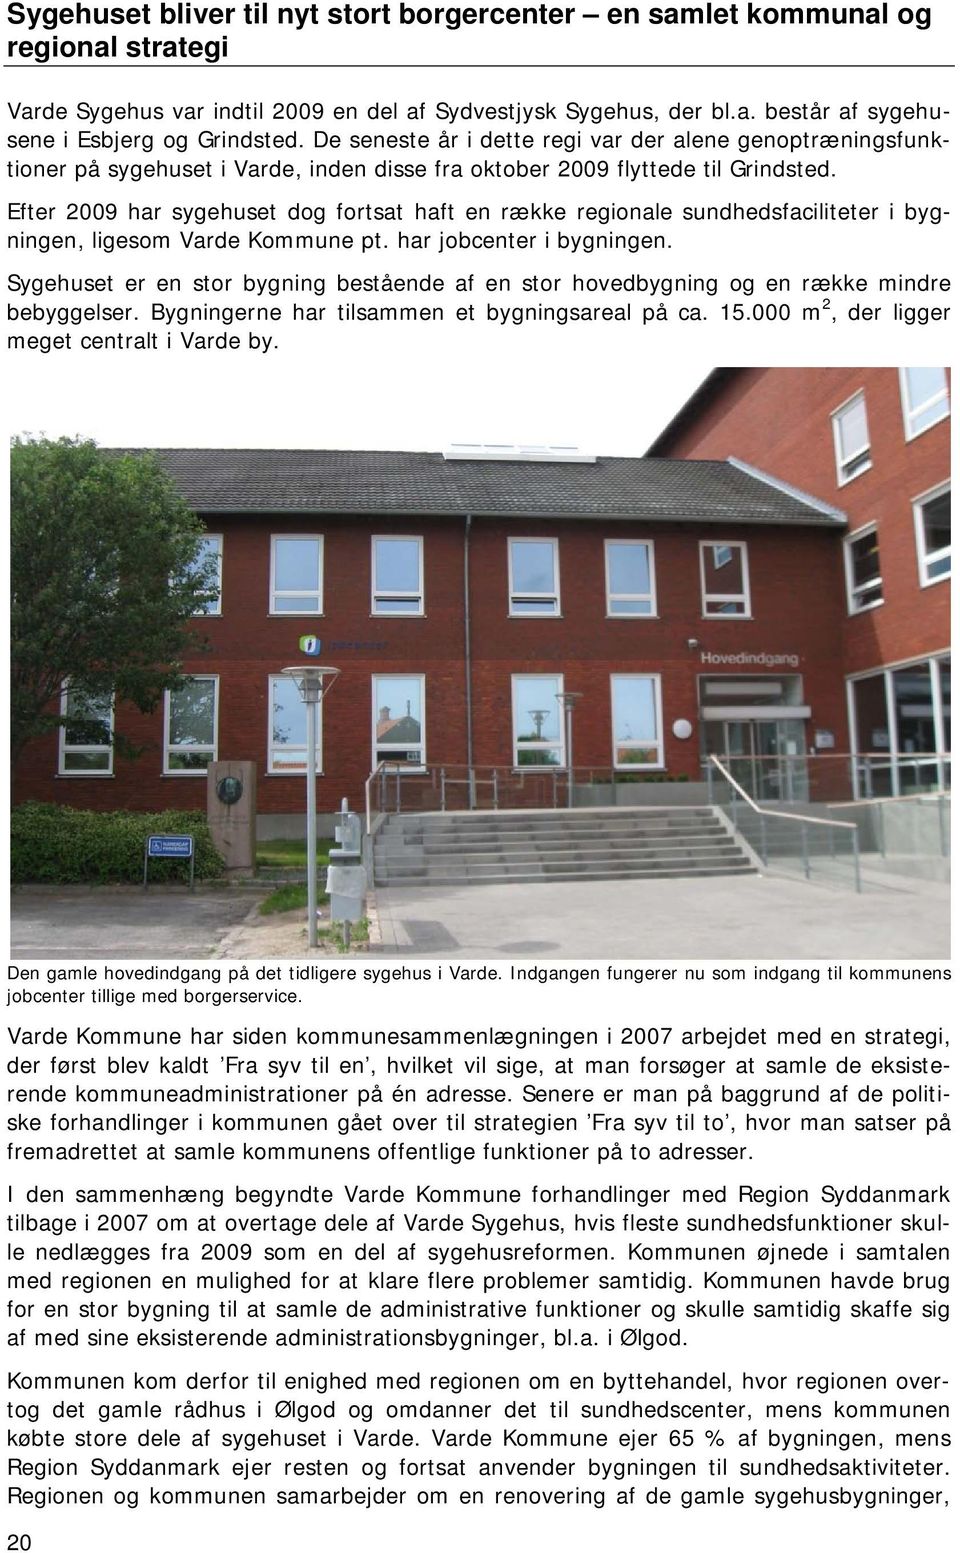 Efter 2009 har sygehuset dog fortsat haft en række regionale sundhedsfaciliteter i bygningen, ligesom Varde Kommune pt. har jobcenter i bygningen.